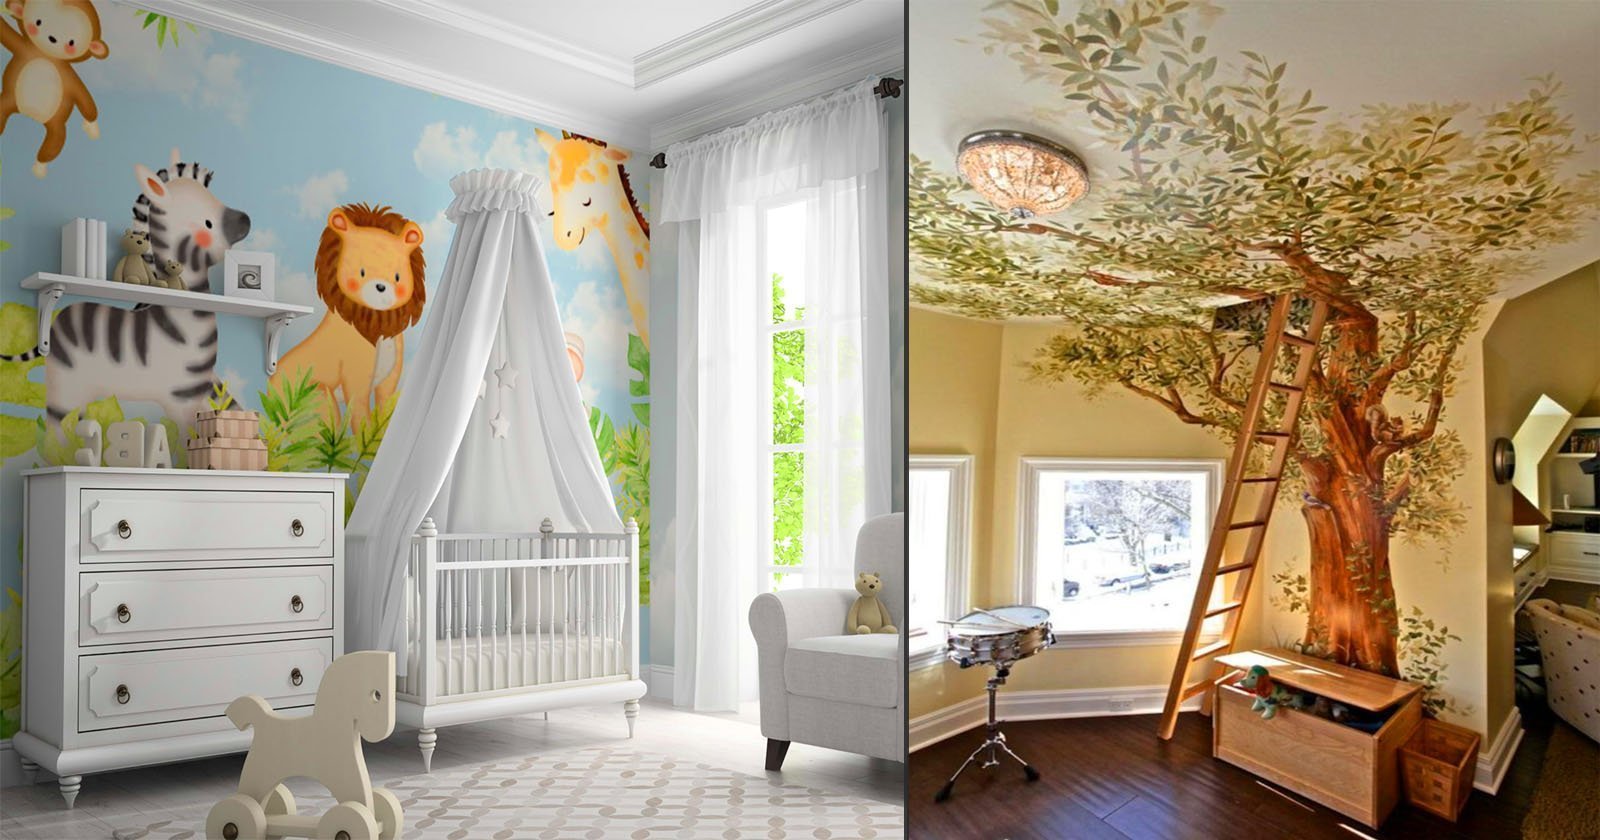 8 dicas para inspirar na decoração de quarto de bebe safari